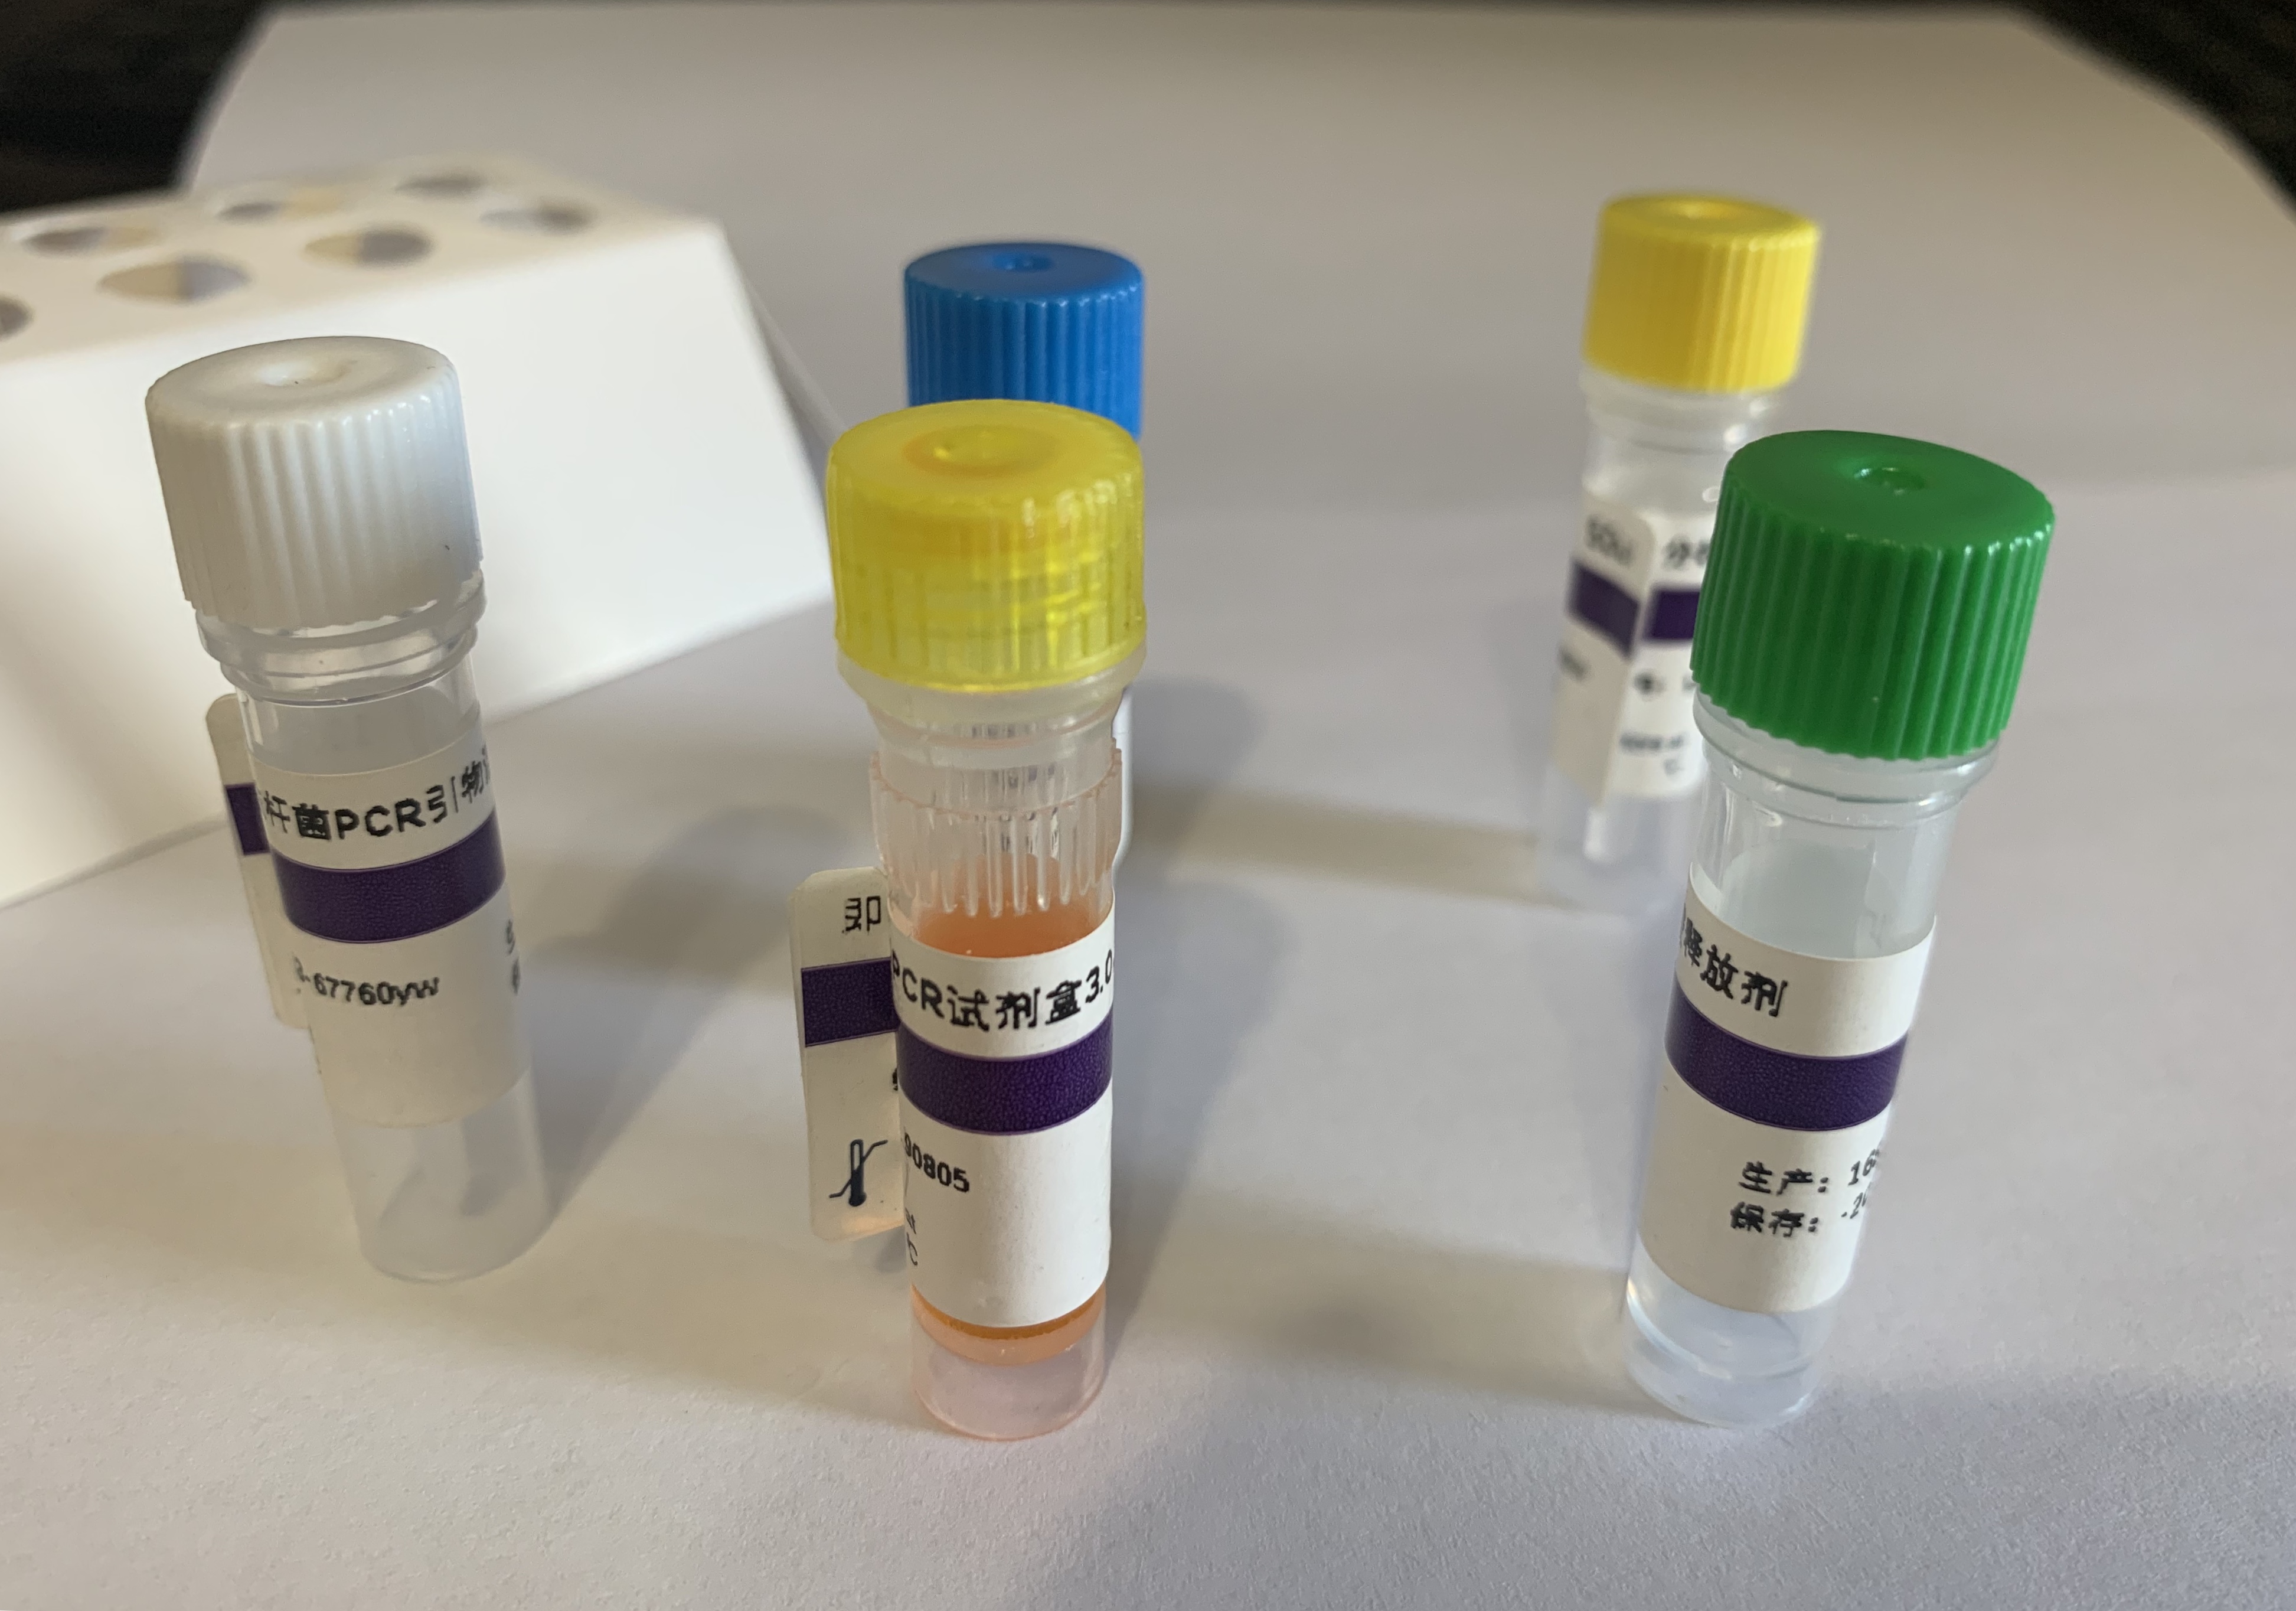 枯草芽孢杆菌PCR试剂盒